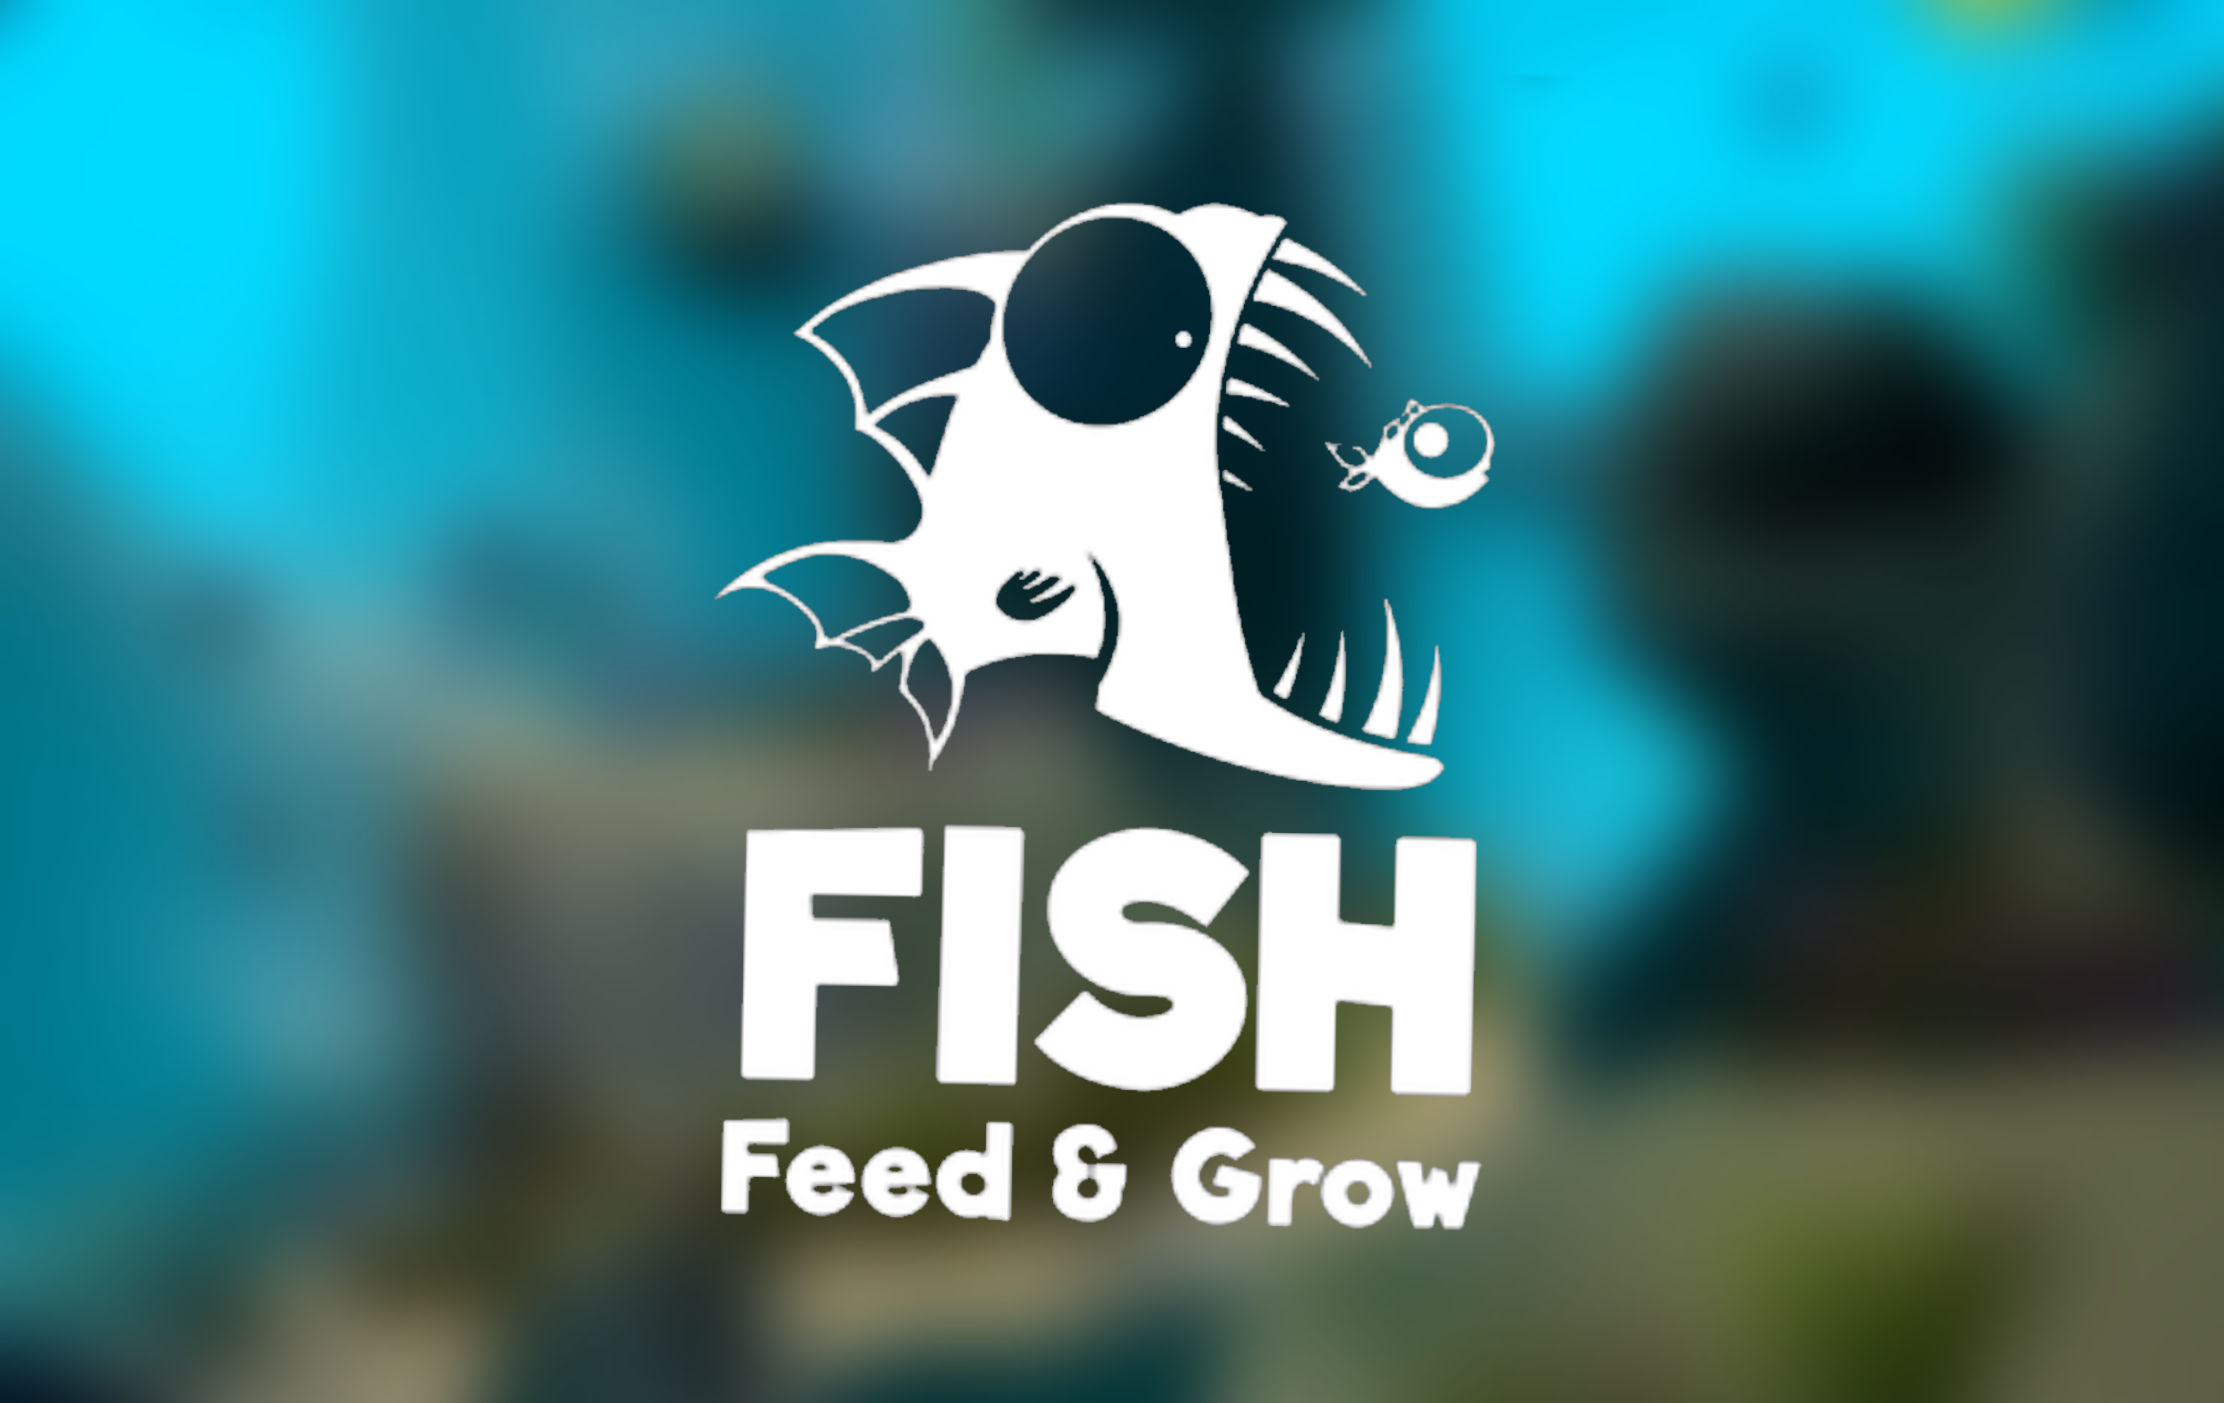 Feed and grow fish ps4  mattvollsparillu1972's Ownd